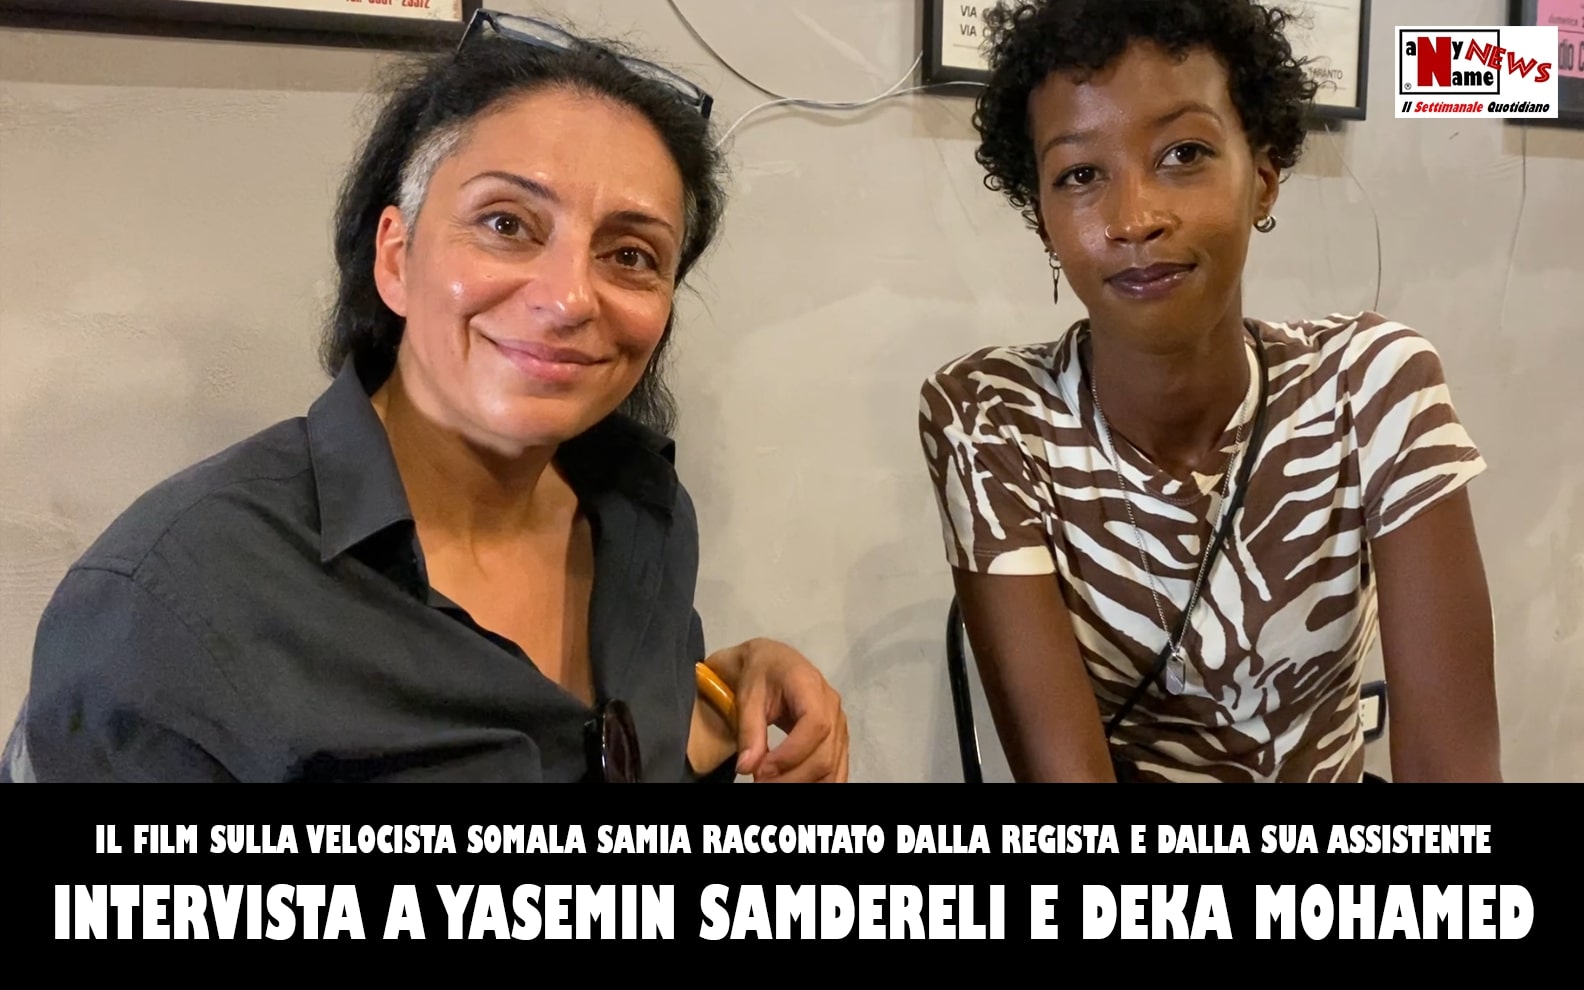 Il film sulla velocista somala Samia raccontato dalla regista YASEMIN SAMDERELI e dall’assistente alla regia DEKA MOHAMED